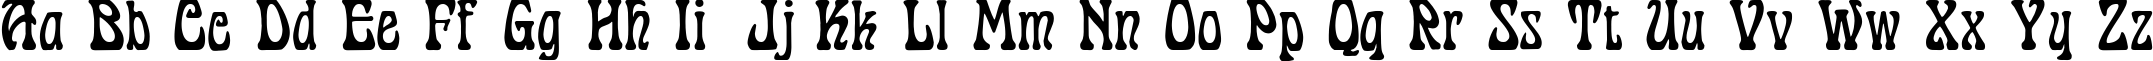 Пример написания английского алфавита шрифтом Cordeballet